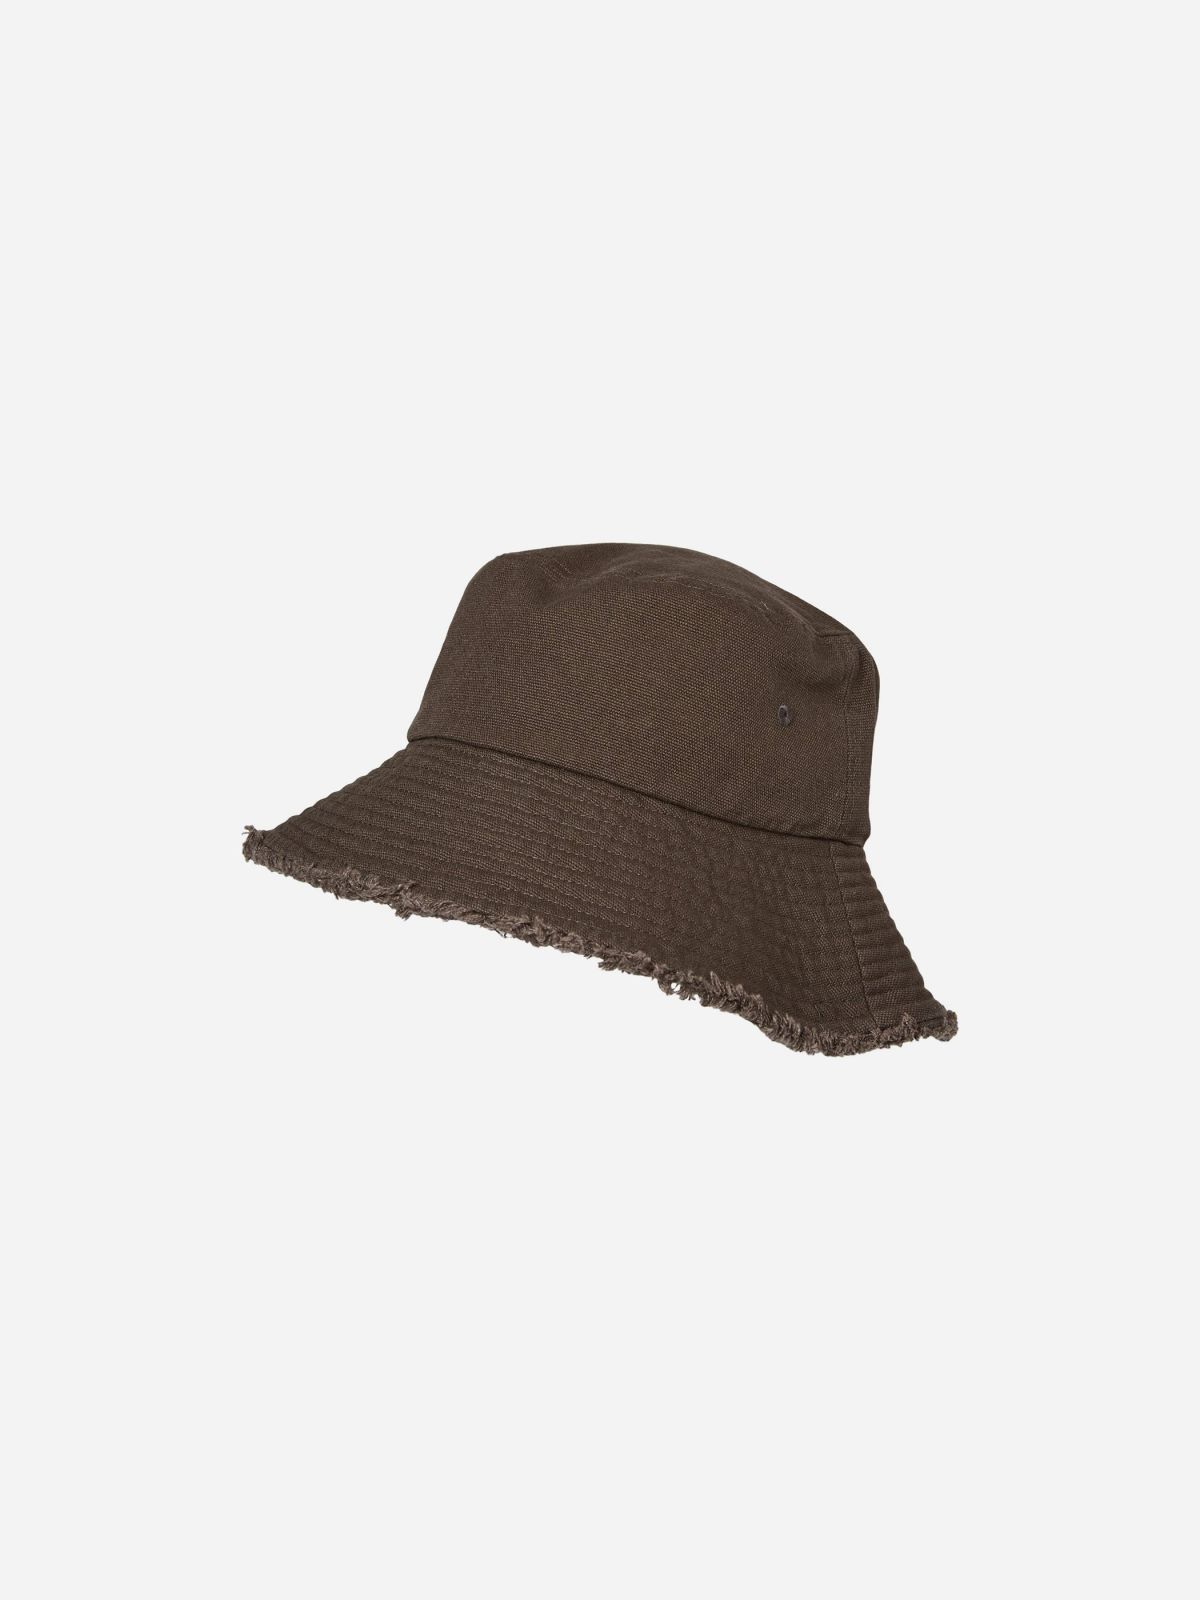  כובע באקט עם סיומת פרומה / נשים של VERO MODA